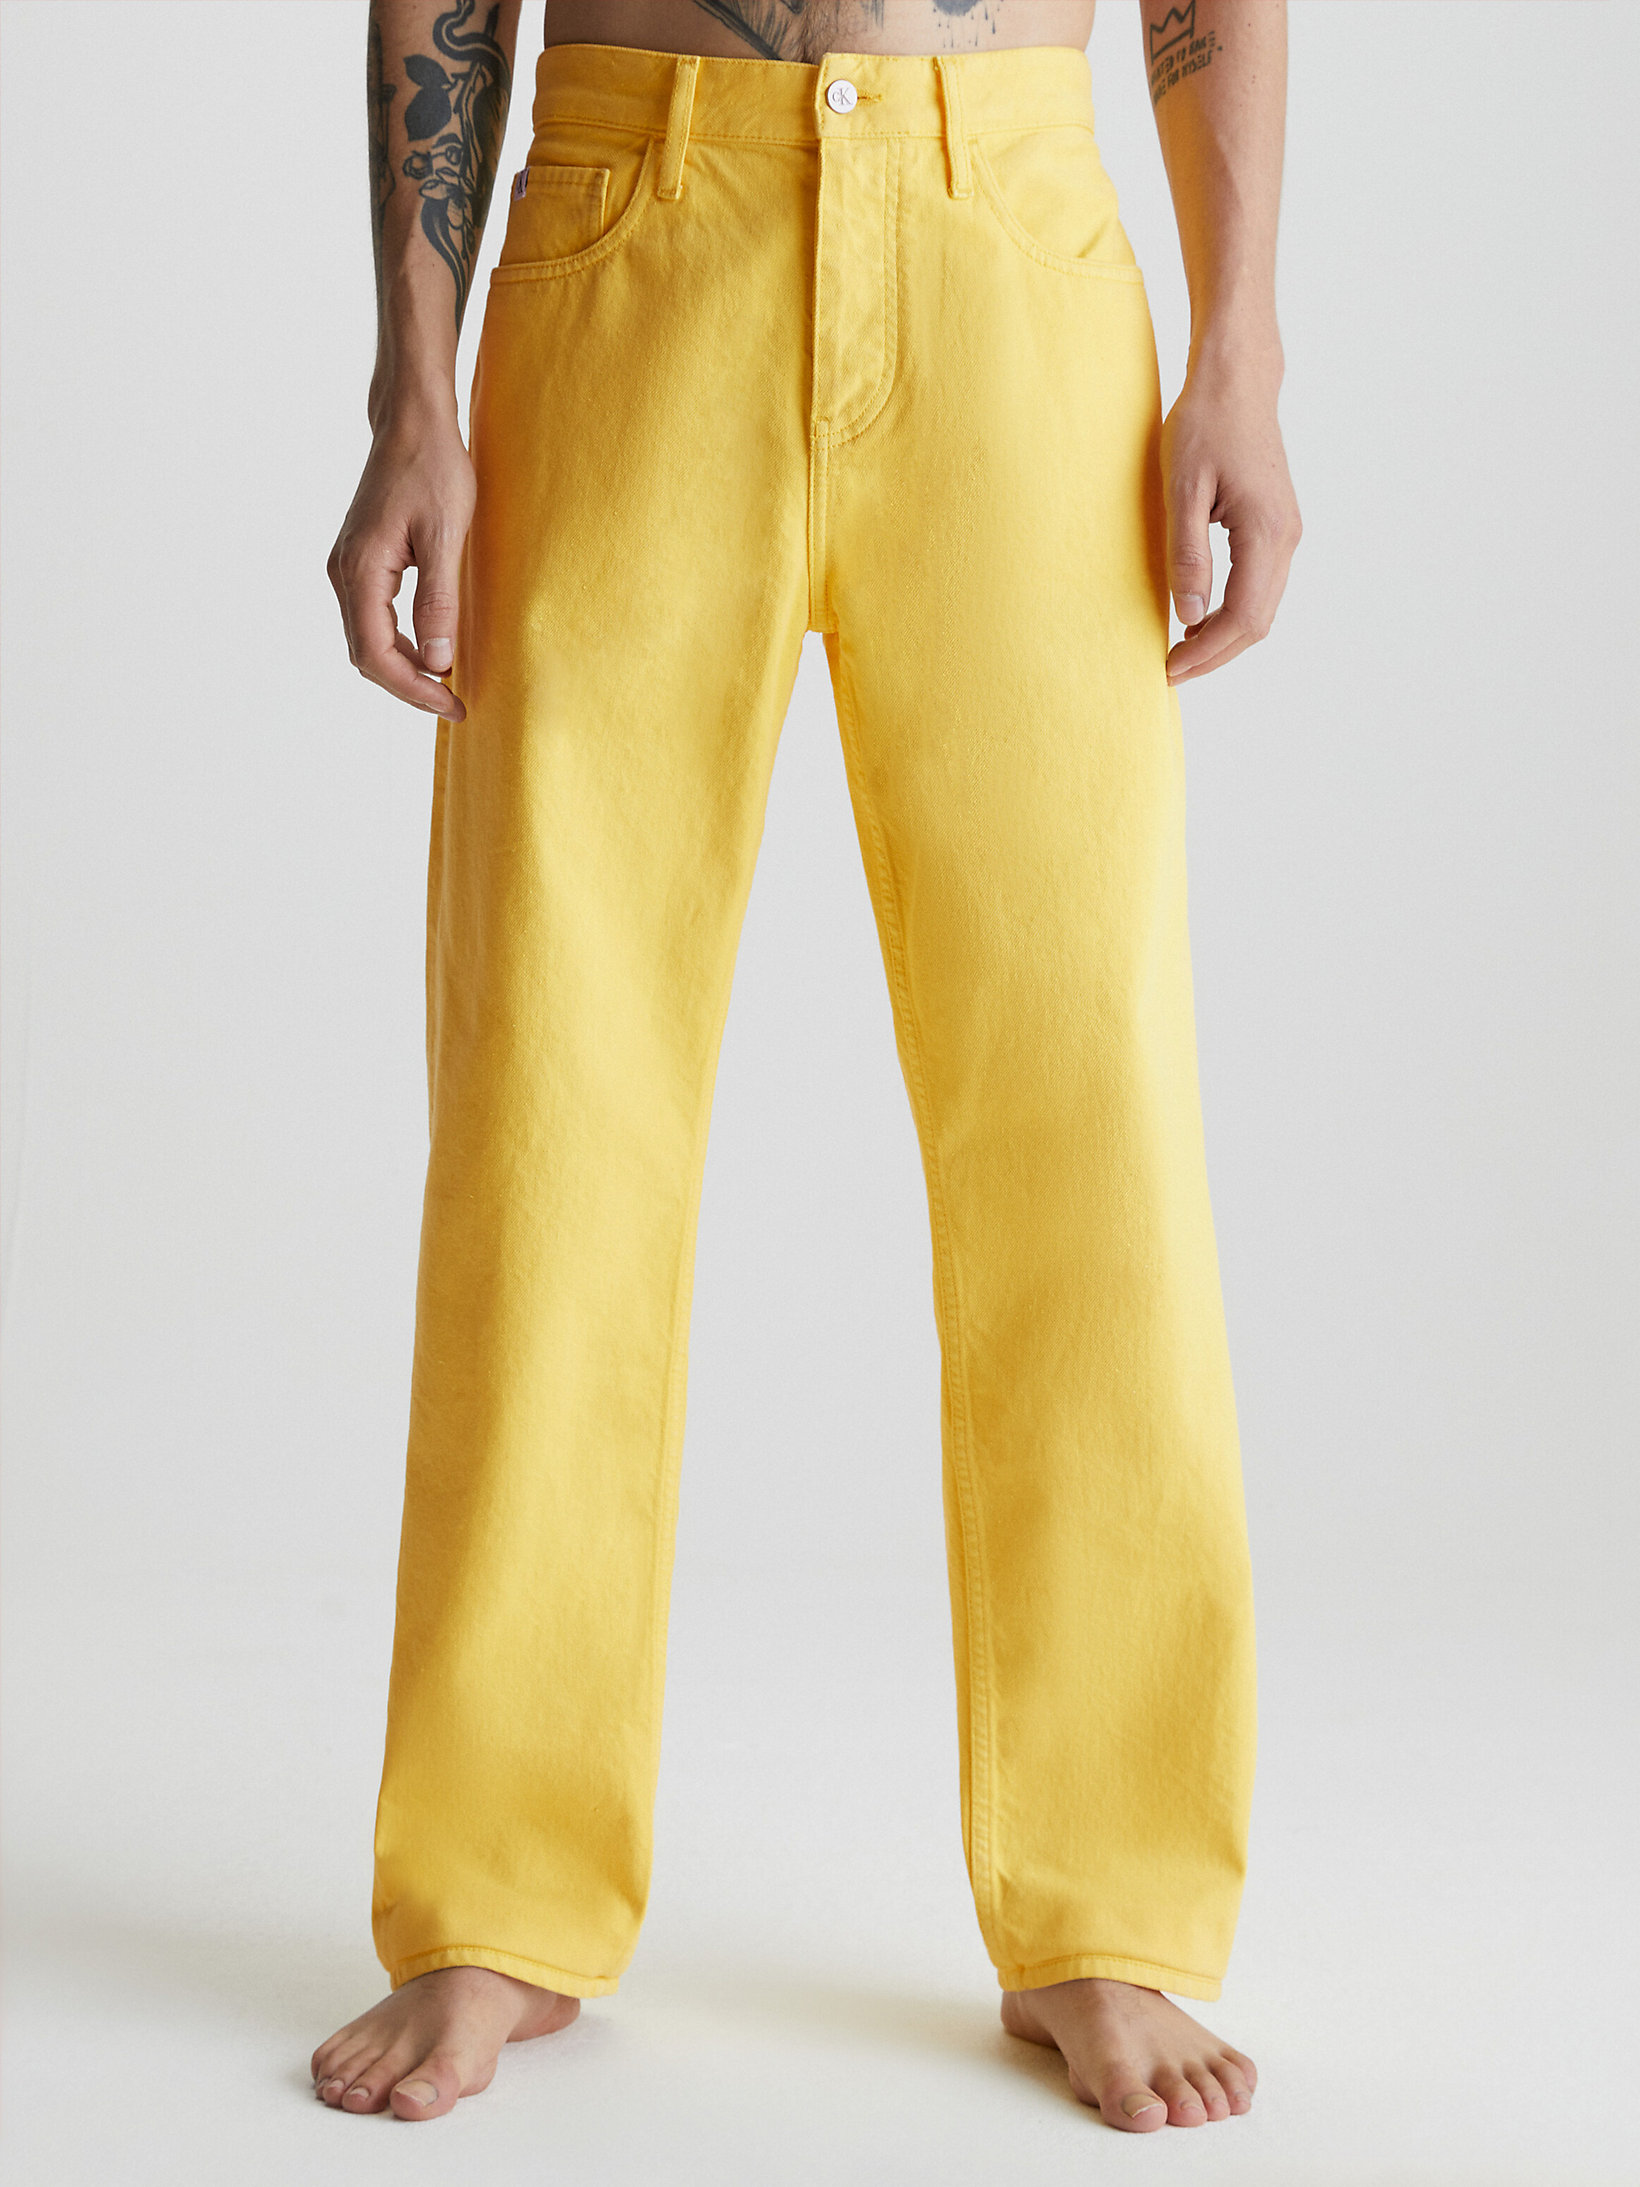 Primrose Yellow 90's Straight Jeans undefined men Calvin Klein